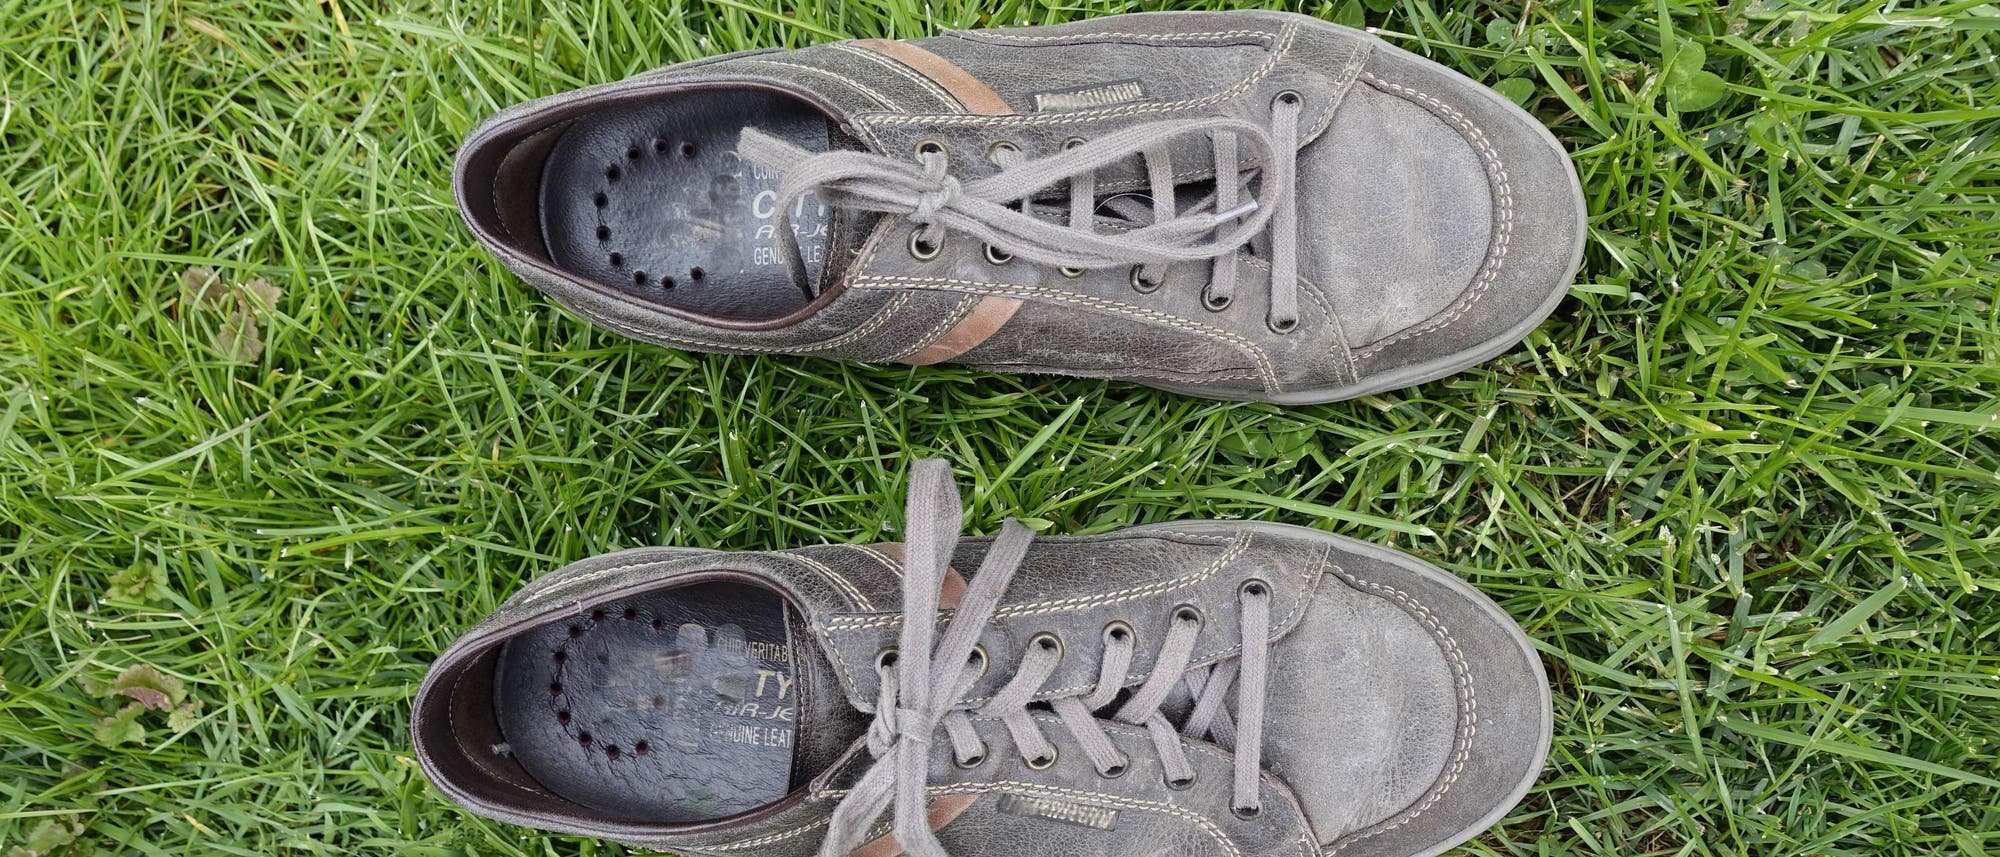 Am Schuh unterscheiden sich Kreuzknoten und Altweiberknoten sichtbar dadurch, dass die Schleife bei ersterem quer, bei letzterem längs zum Schuh orientiert ist.